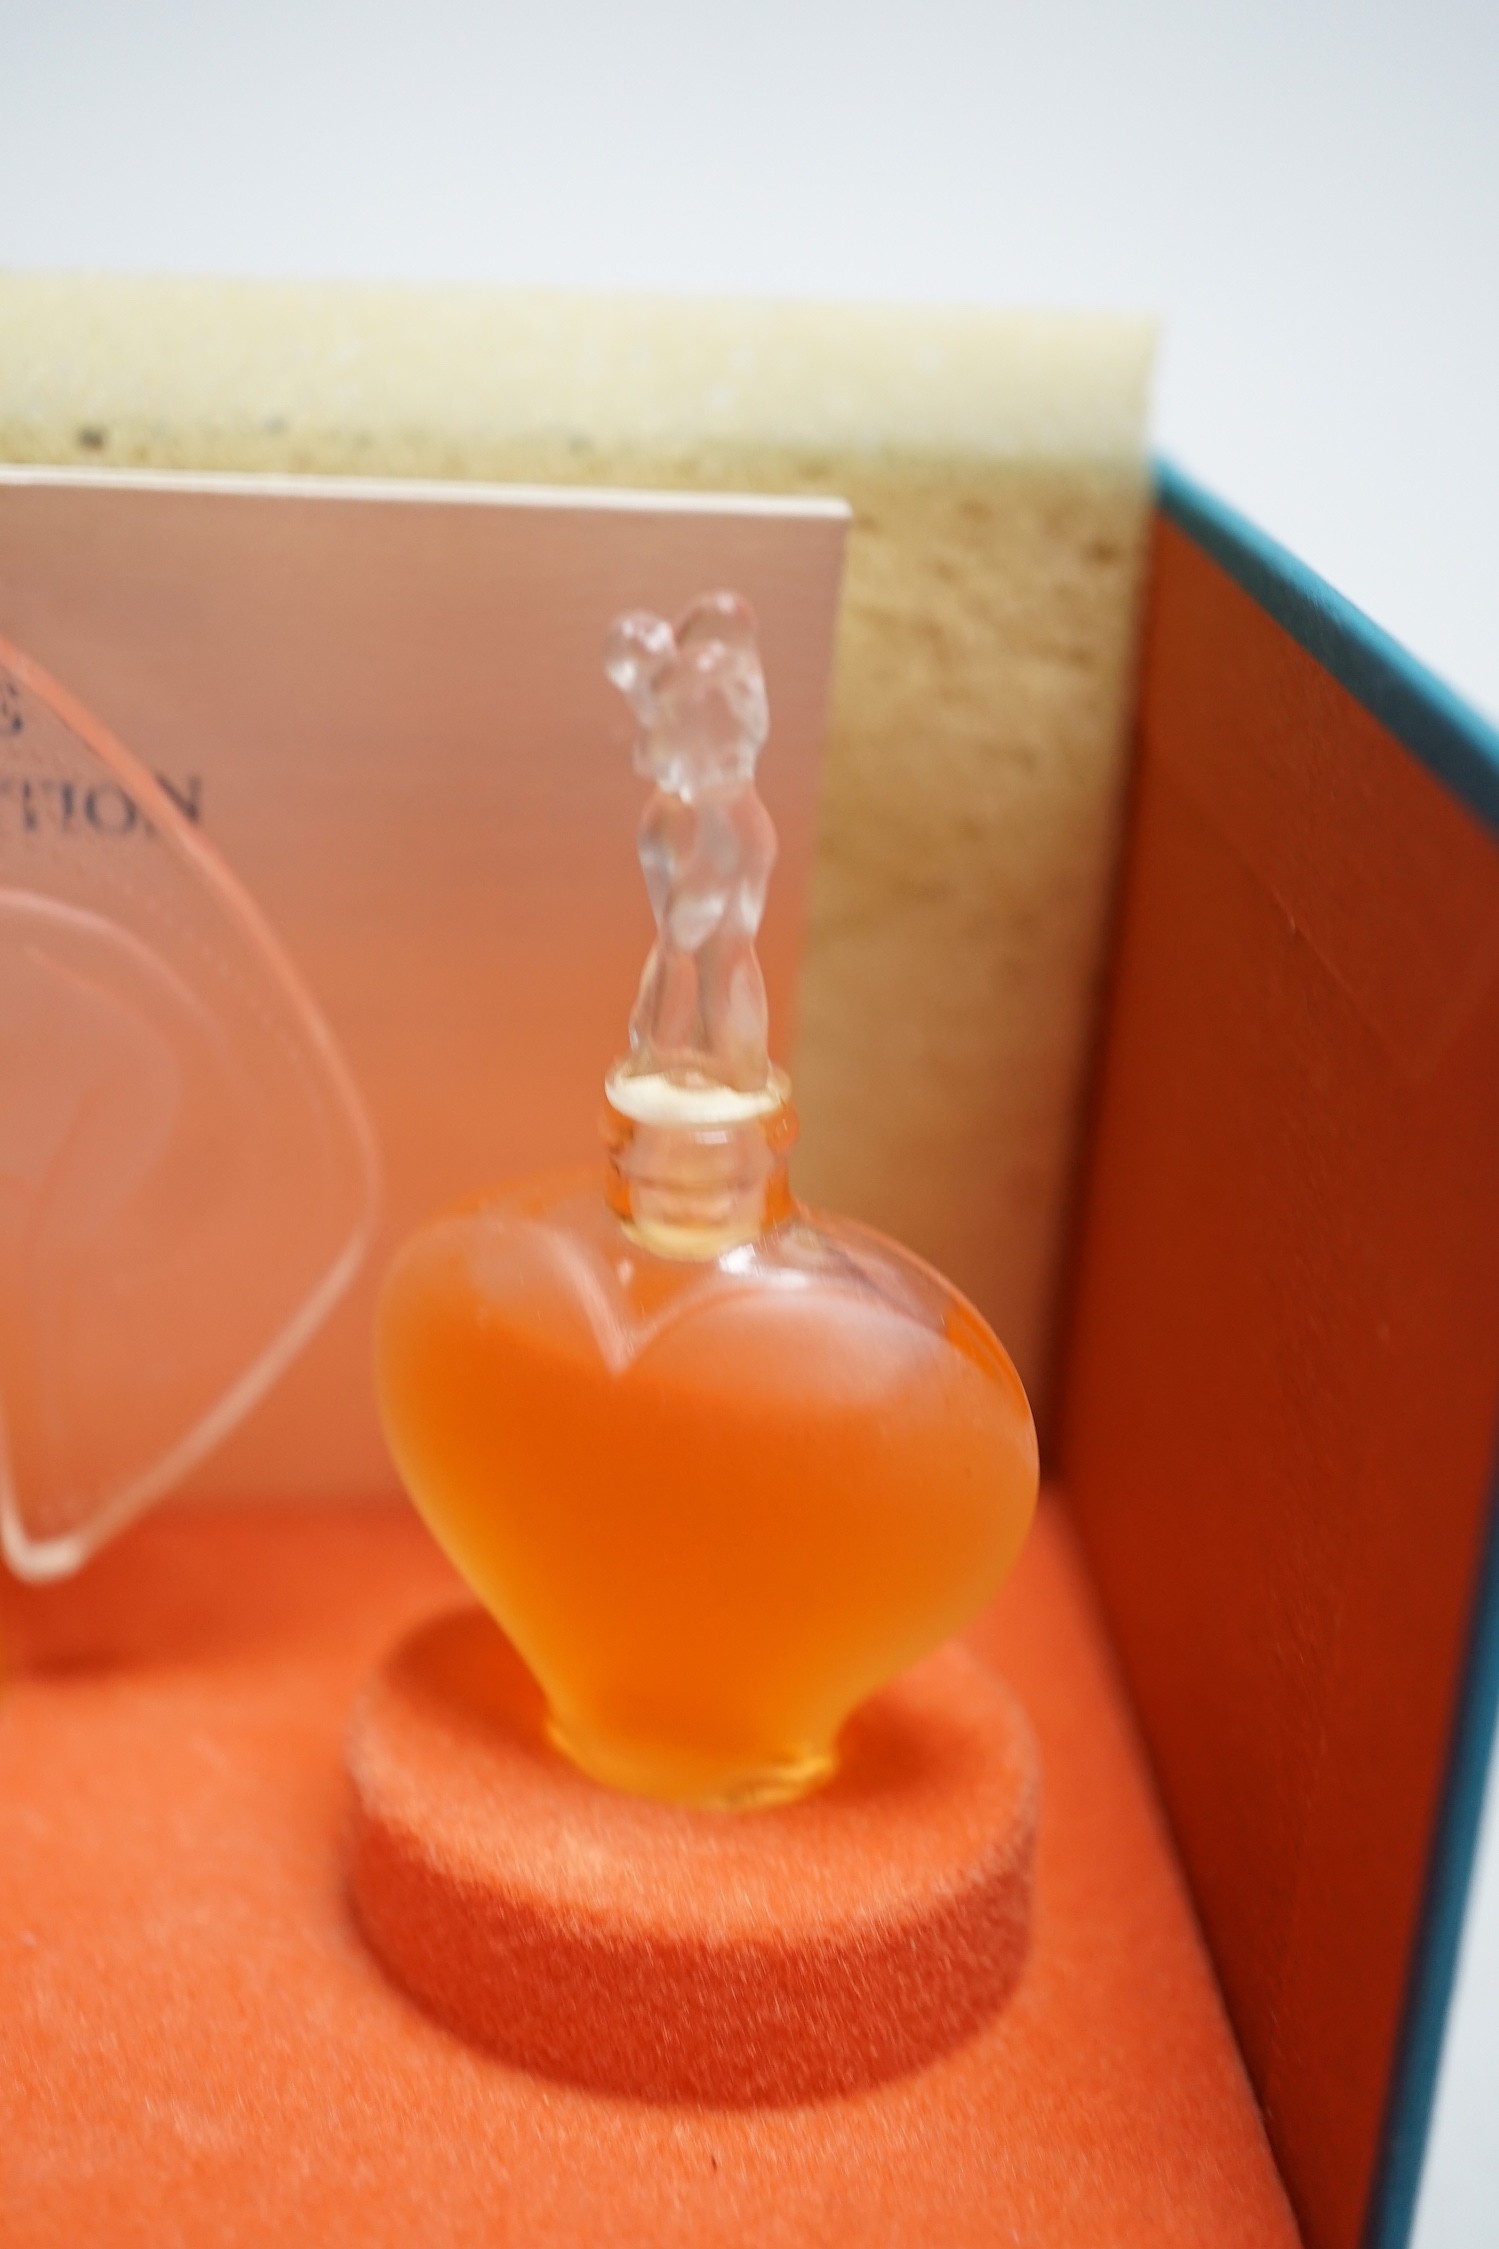 A boxed Lalique Les Introuvables perfume set